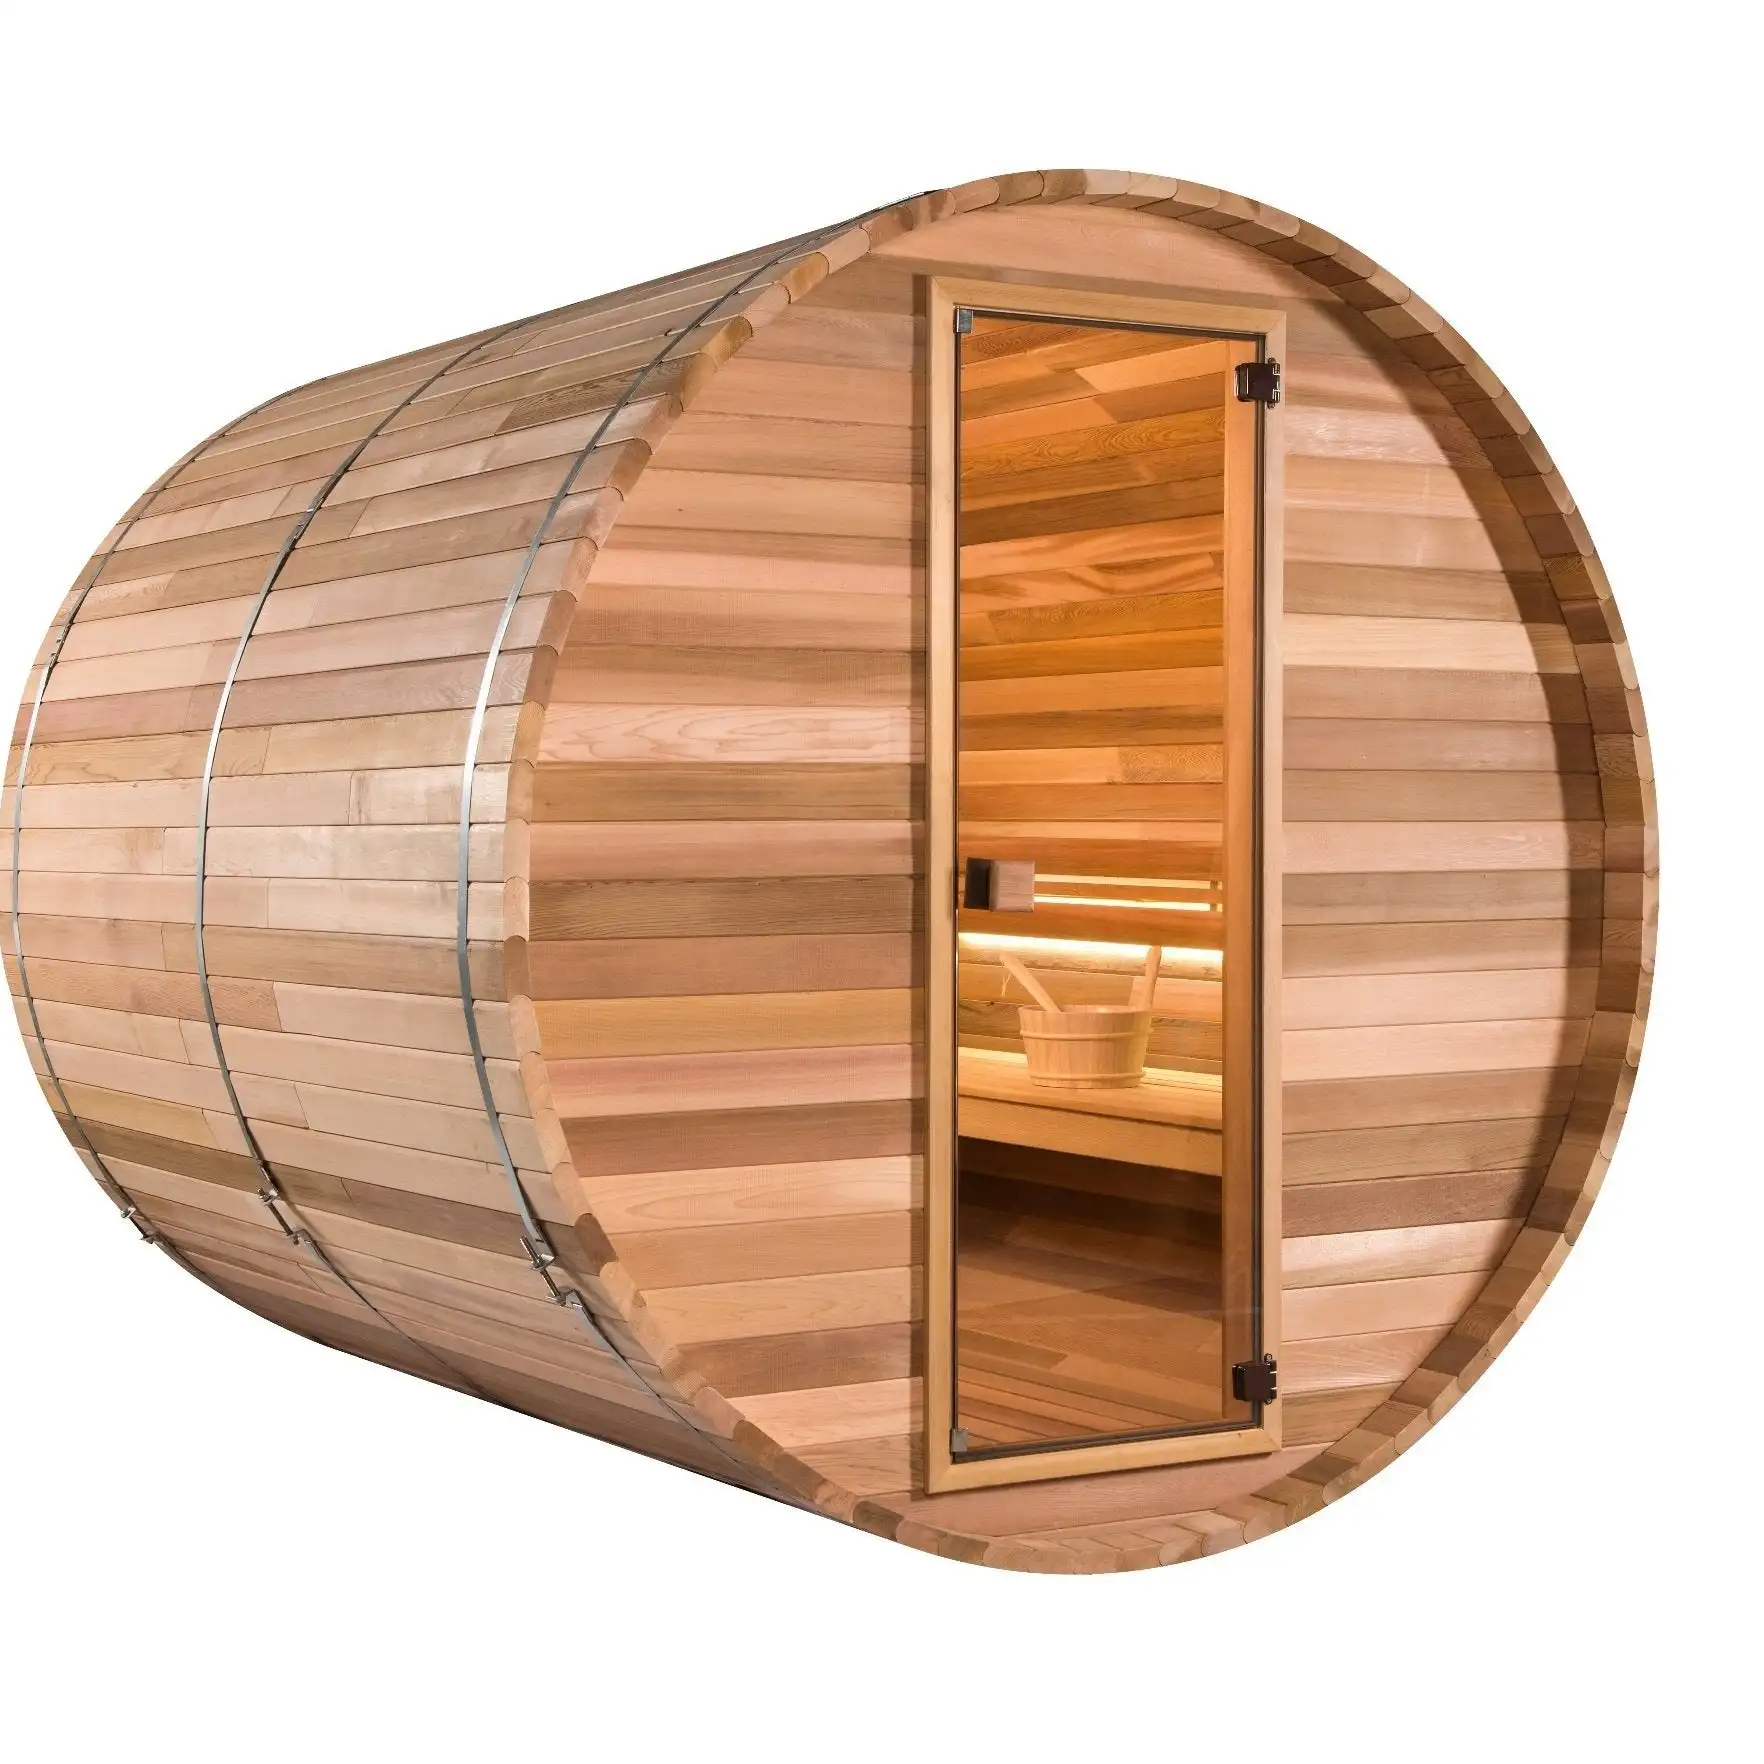 Octa Barrel Sauna “Mega-3”